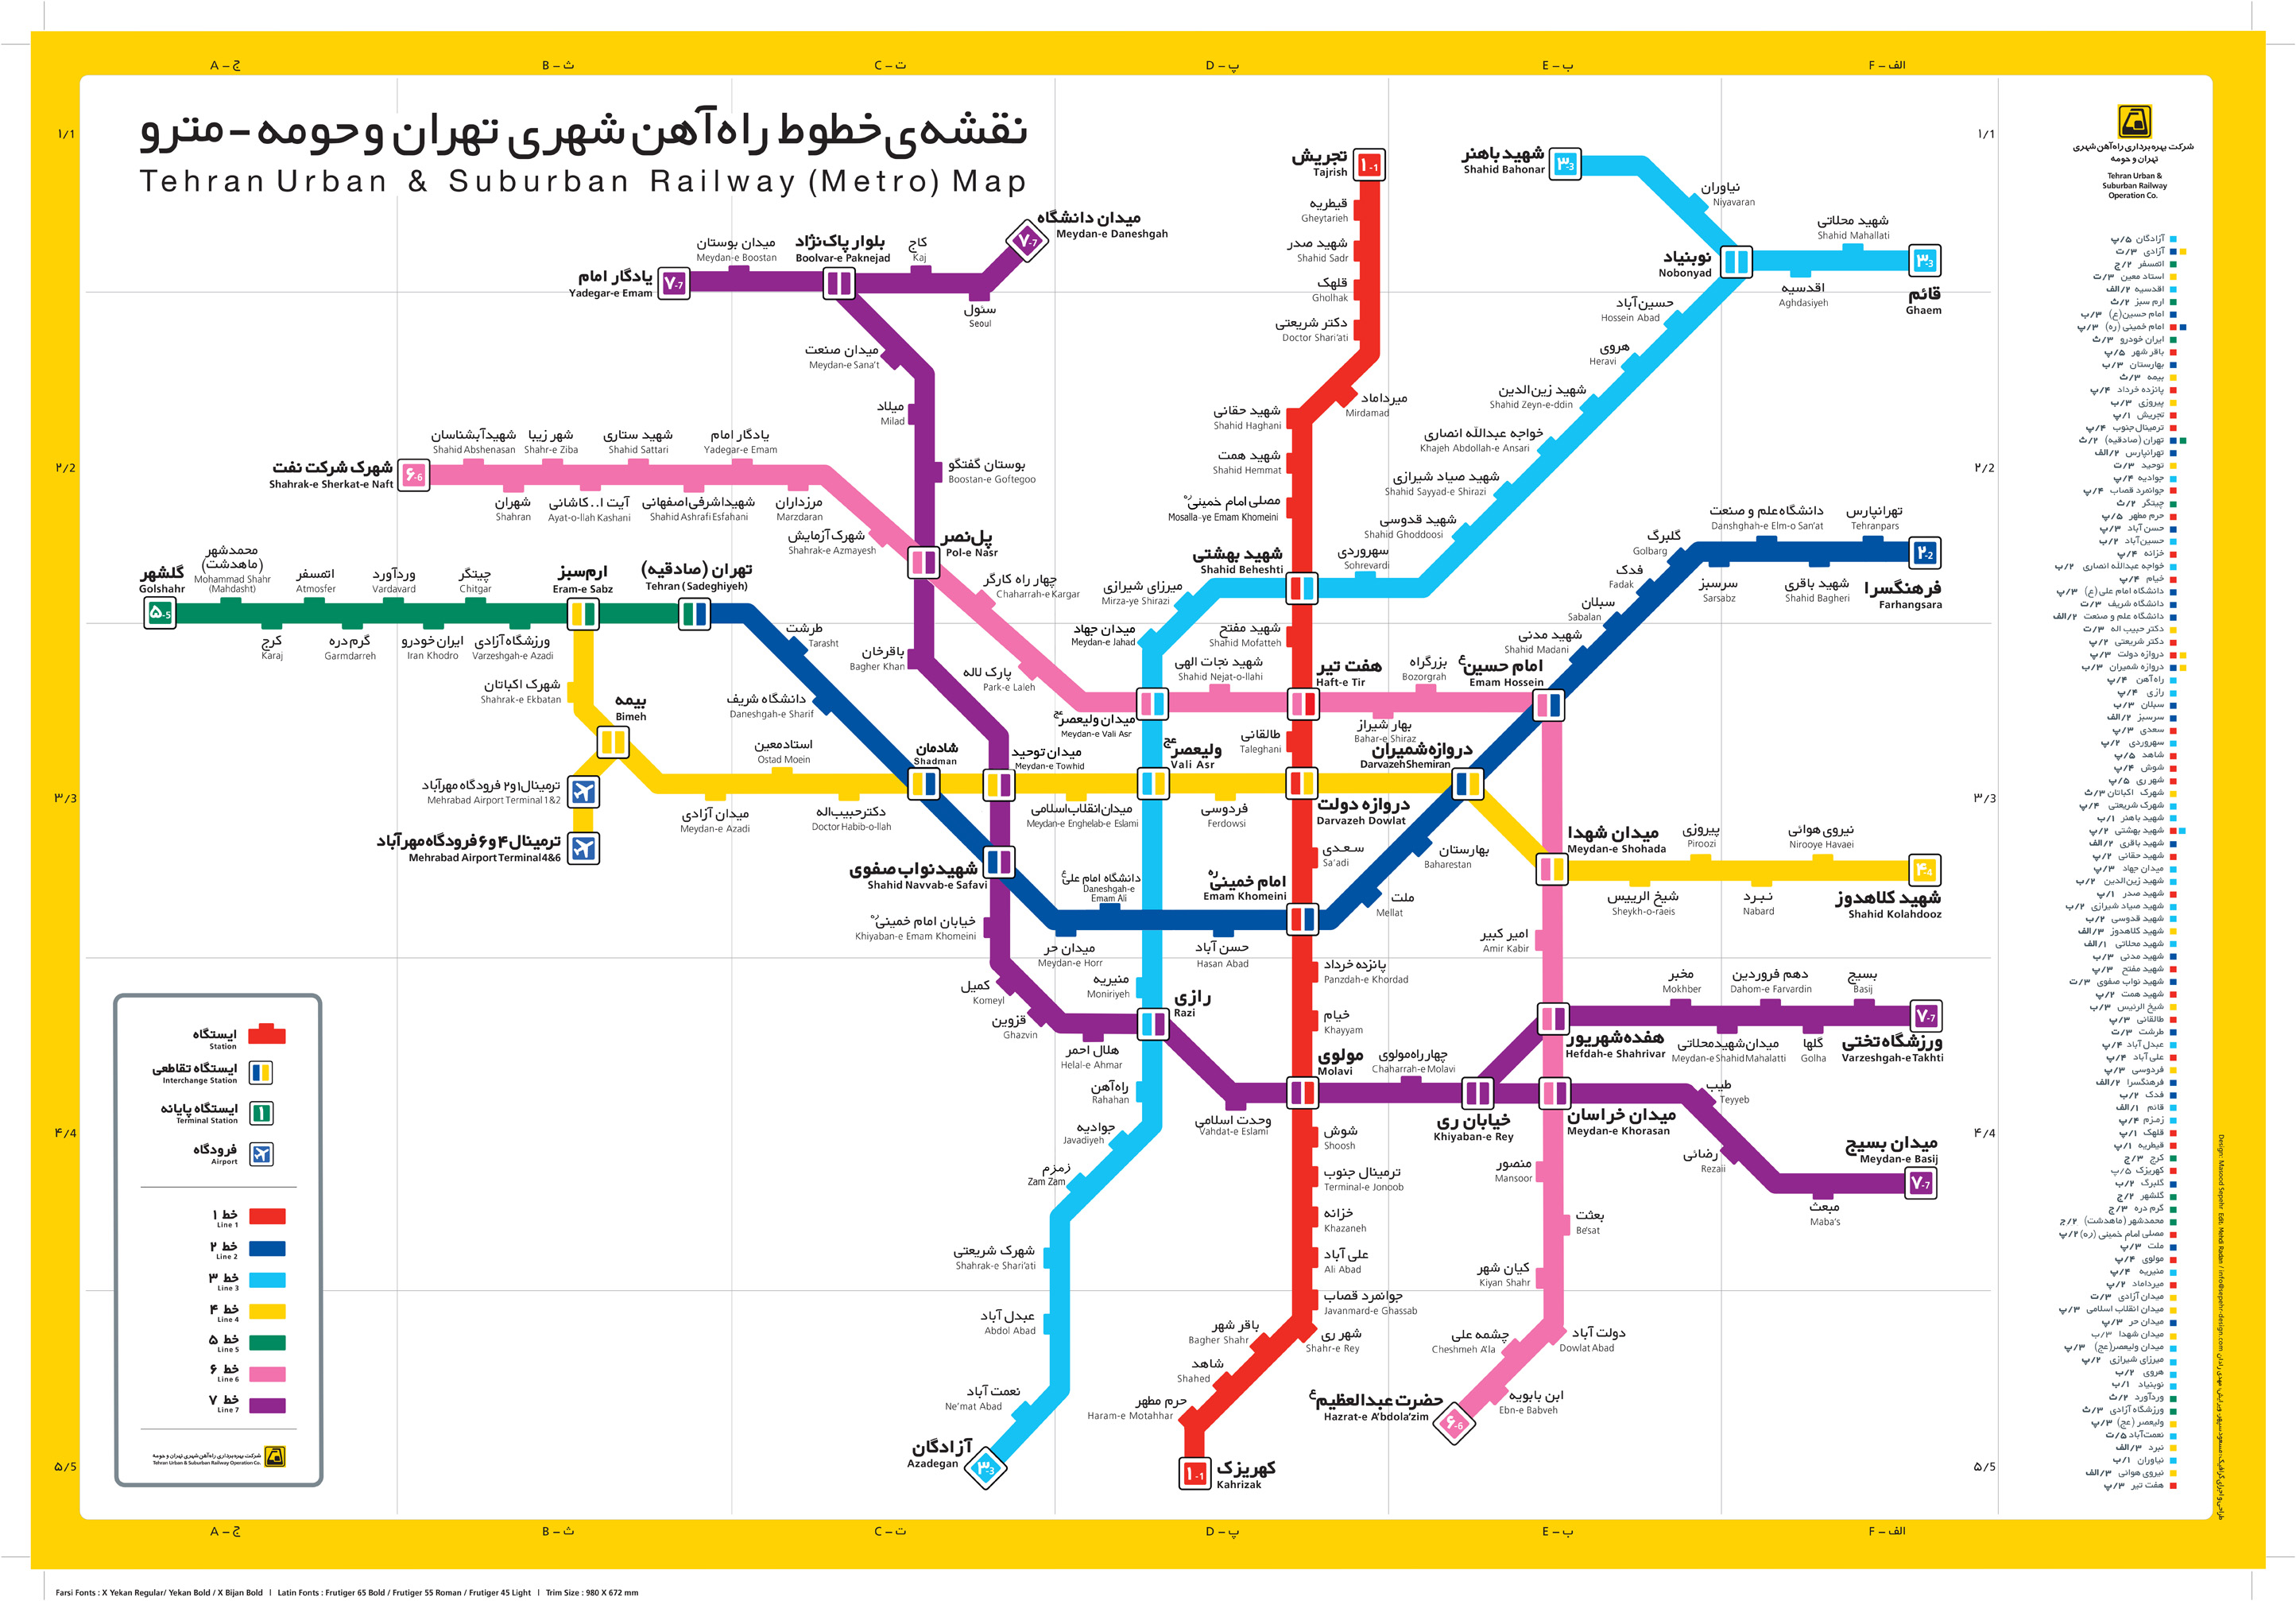 عکس نقشه مترو تهران با کیفیت بالا